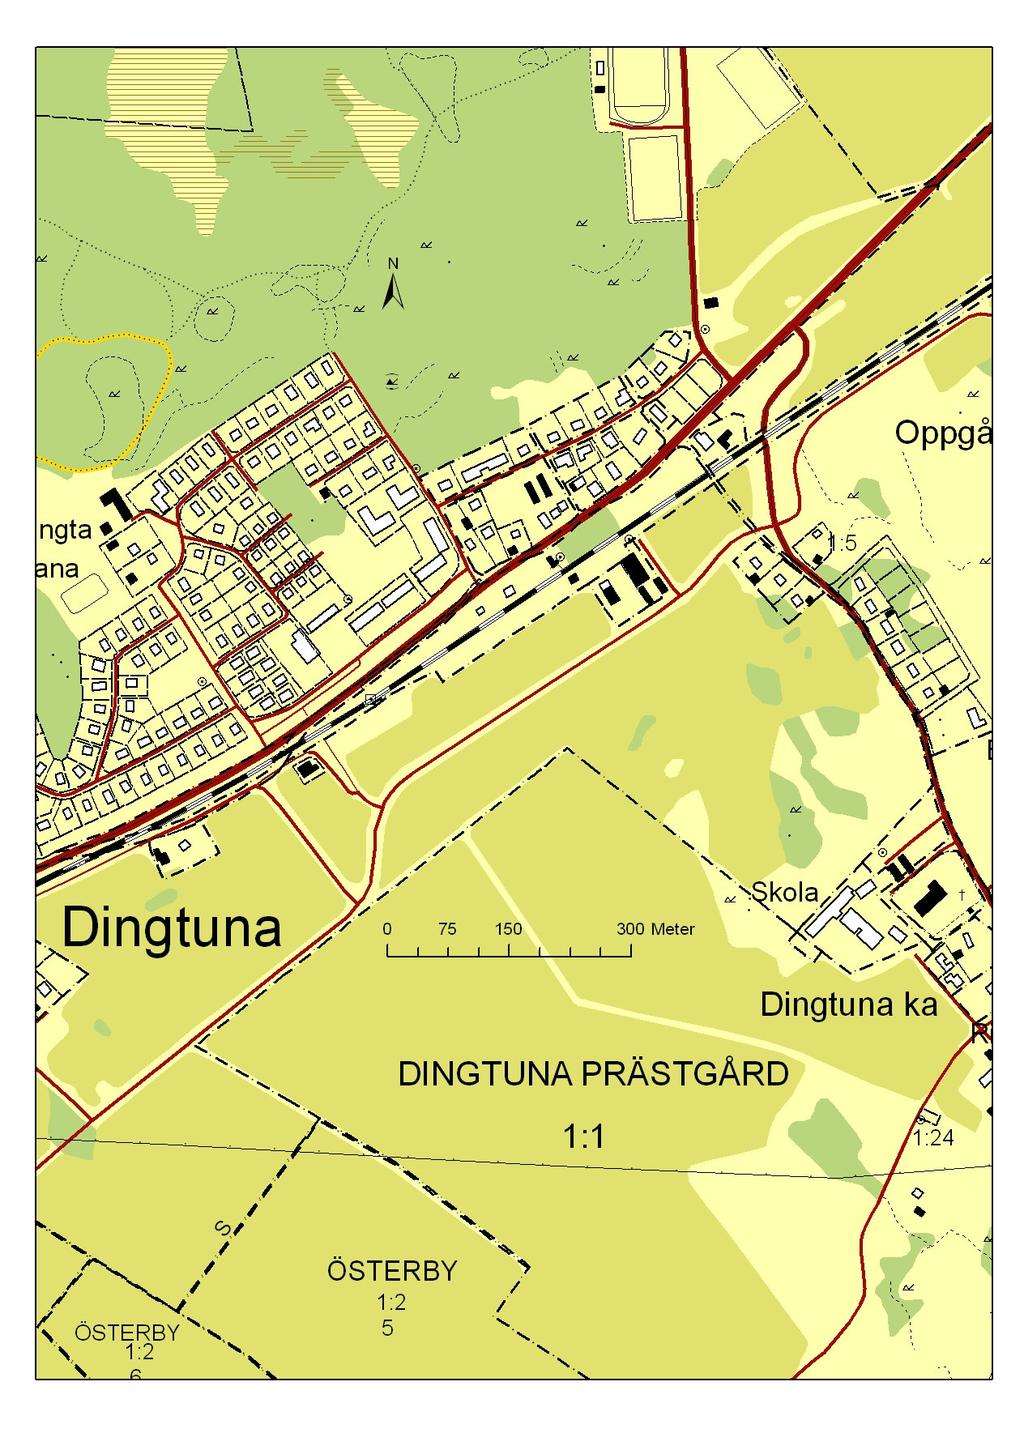 Inledning Dingtuna-Lillhärad sockengille ansökte hösten år 2010 om byggnadsvårdsbidrag för att lägga om plåttaket på den f.d. stationsbyggnaden i Dingtuna.